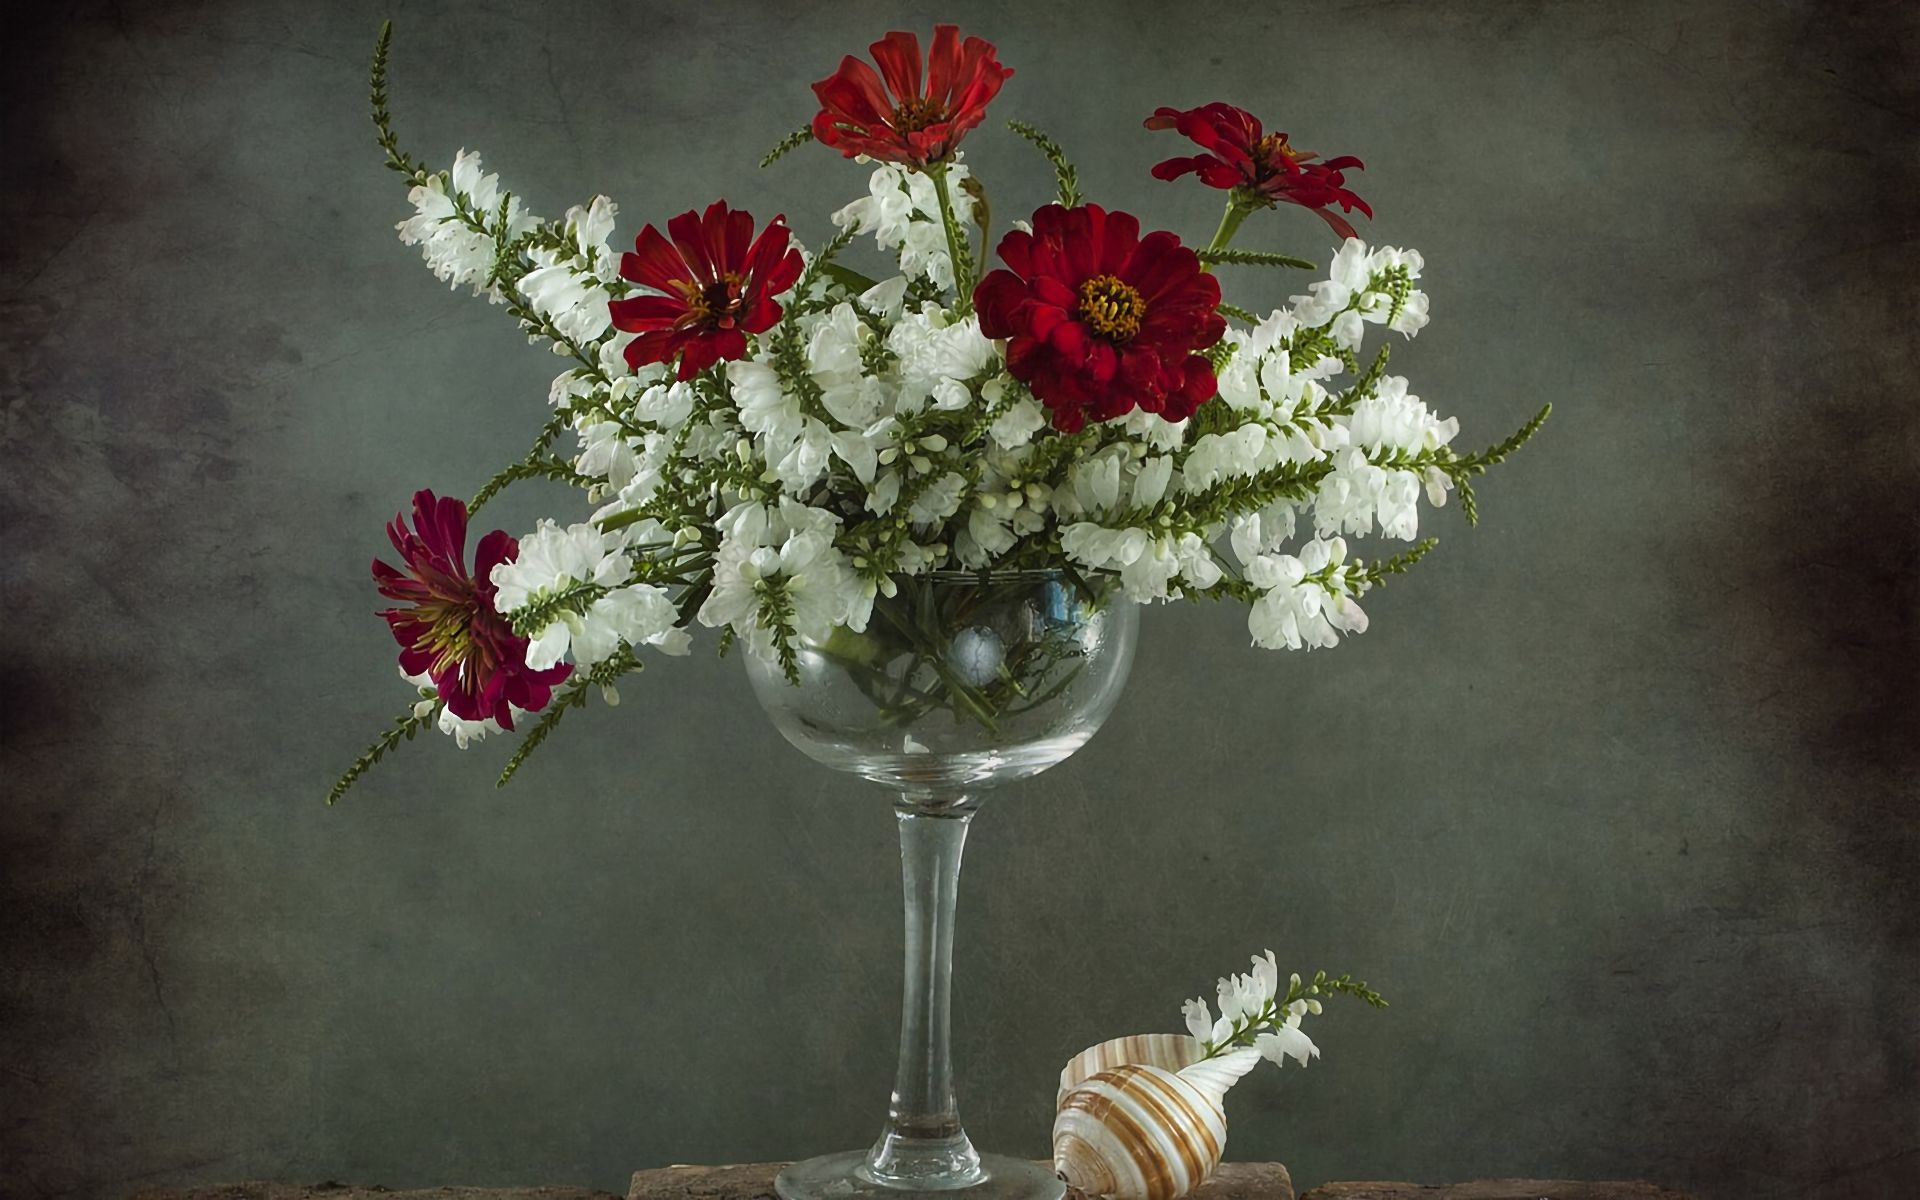 photography, still life, flower, goblet, red flower, shell, white flower High Definition image